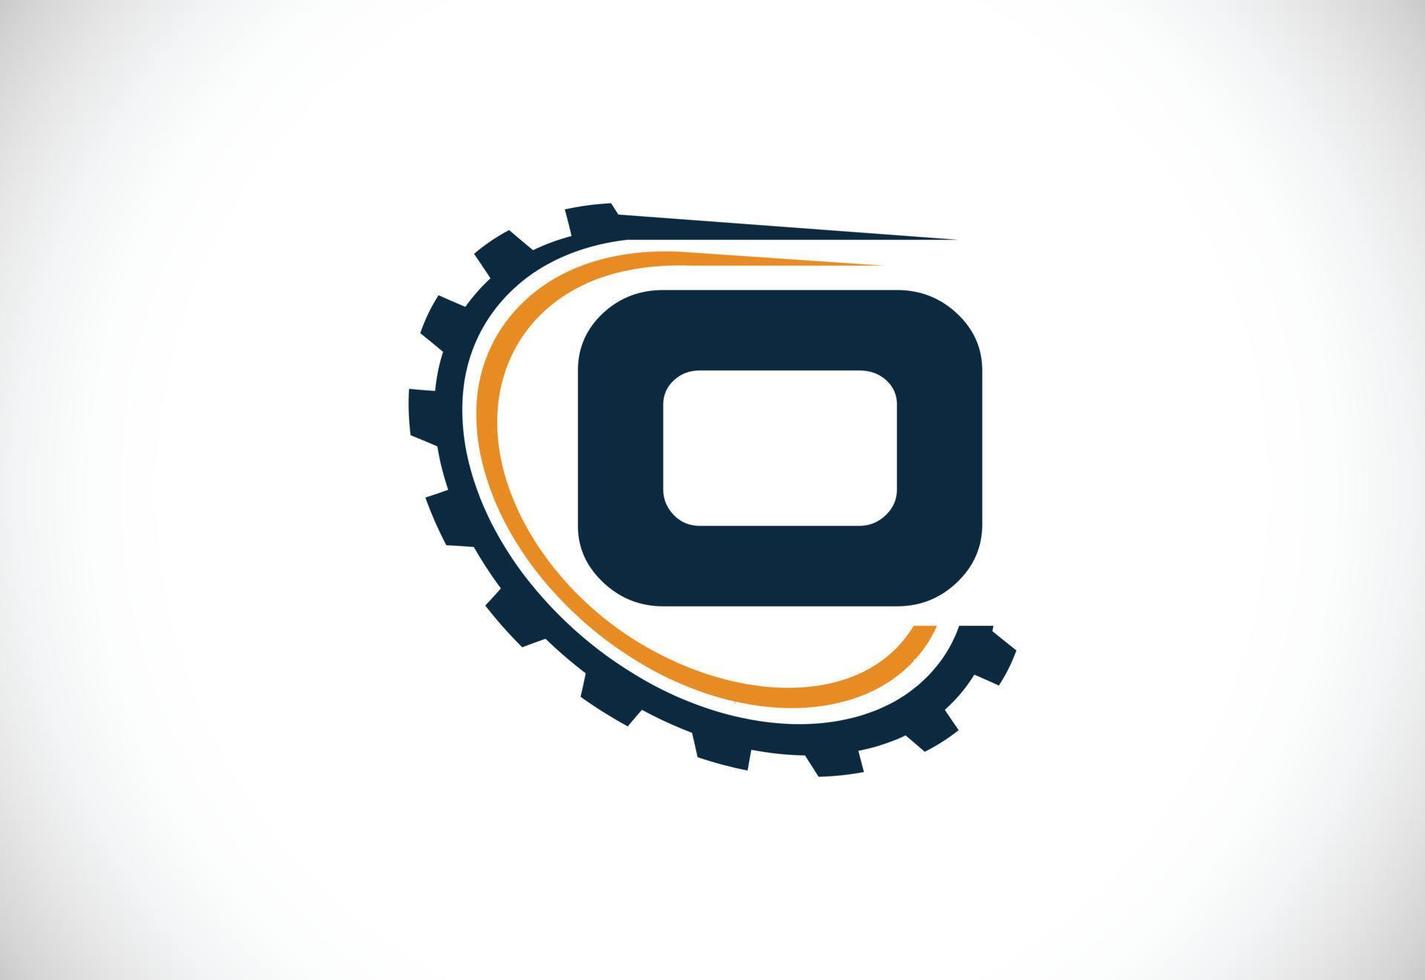 eerste O alfabet met een versnelling. uitrusting ingenieur logo ontwerp. logo voor auto, mechanisch, technologie, instelling, reparatie bedrijf, en bedrijf identiteit vector